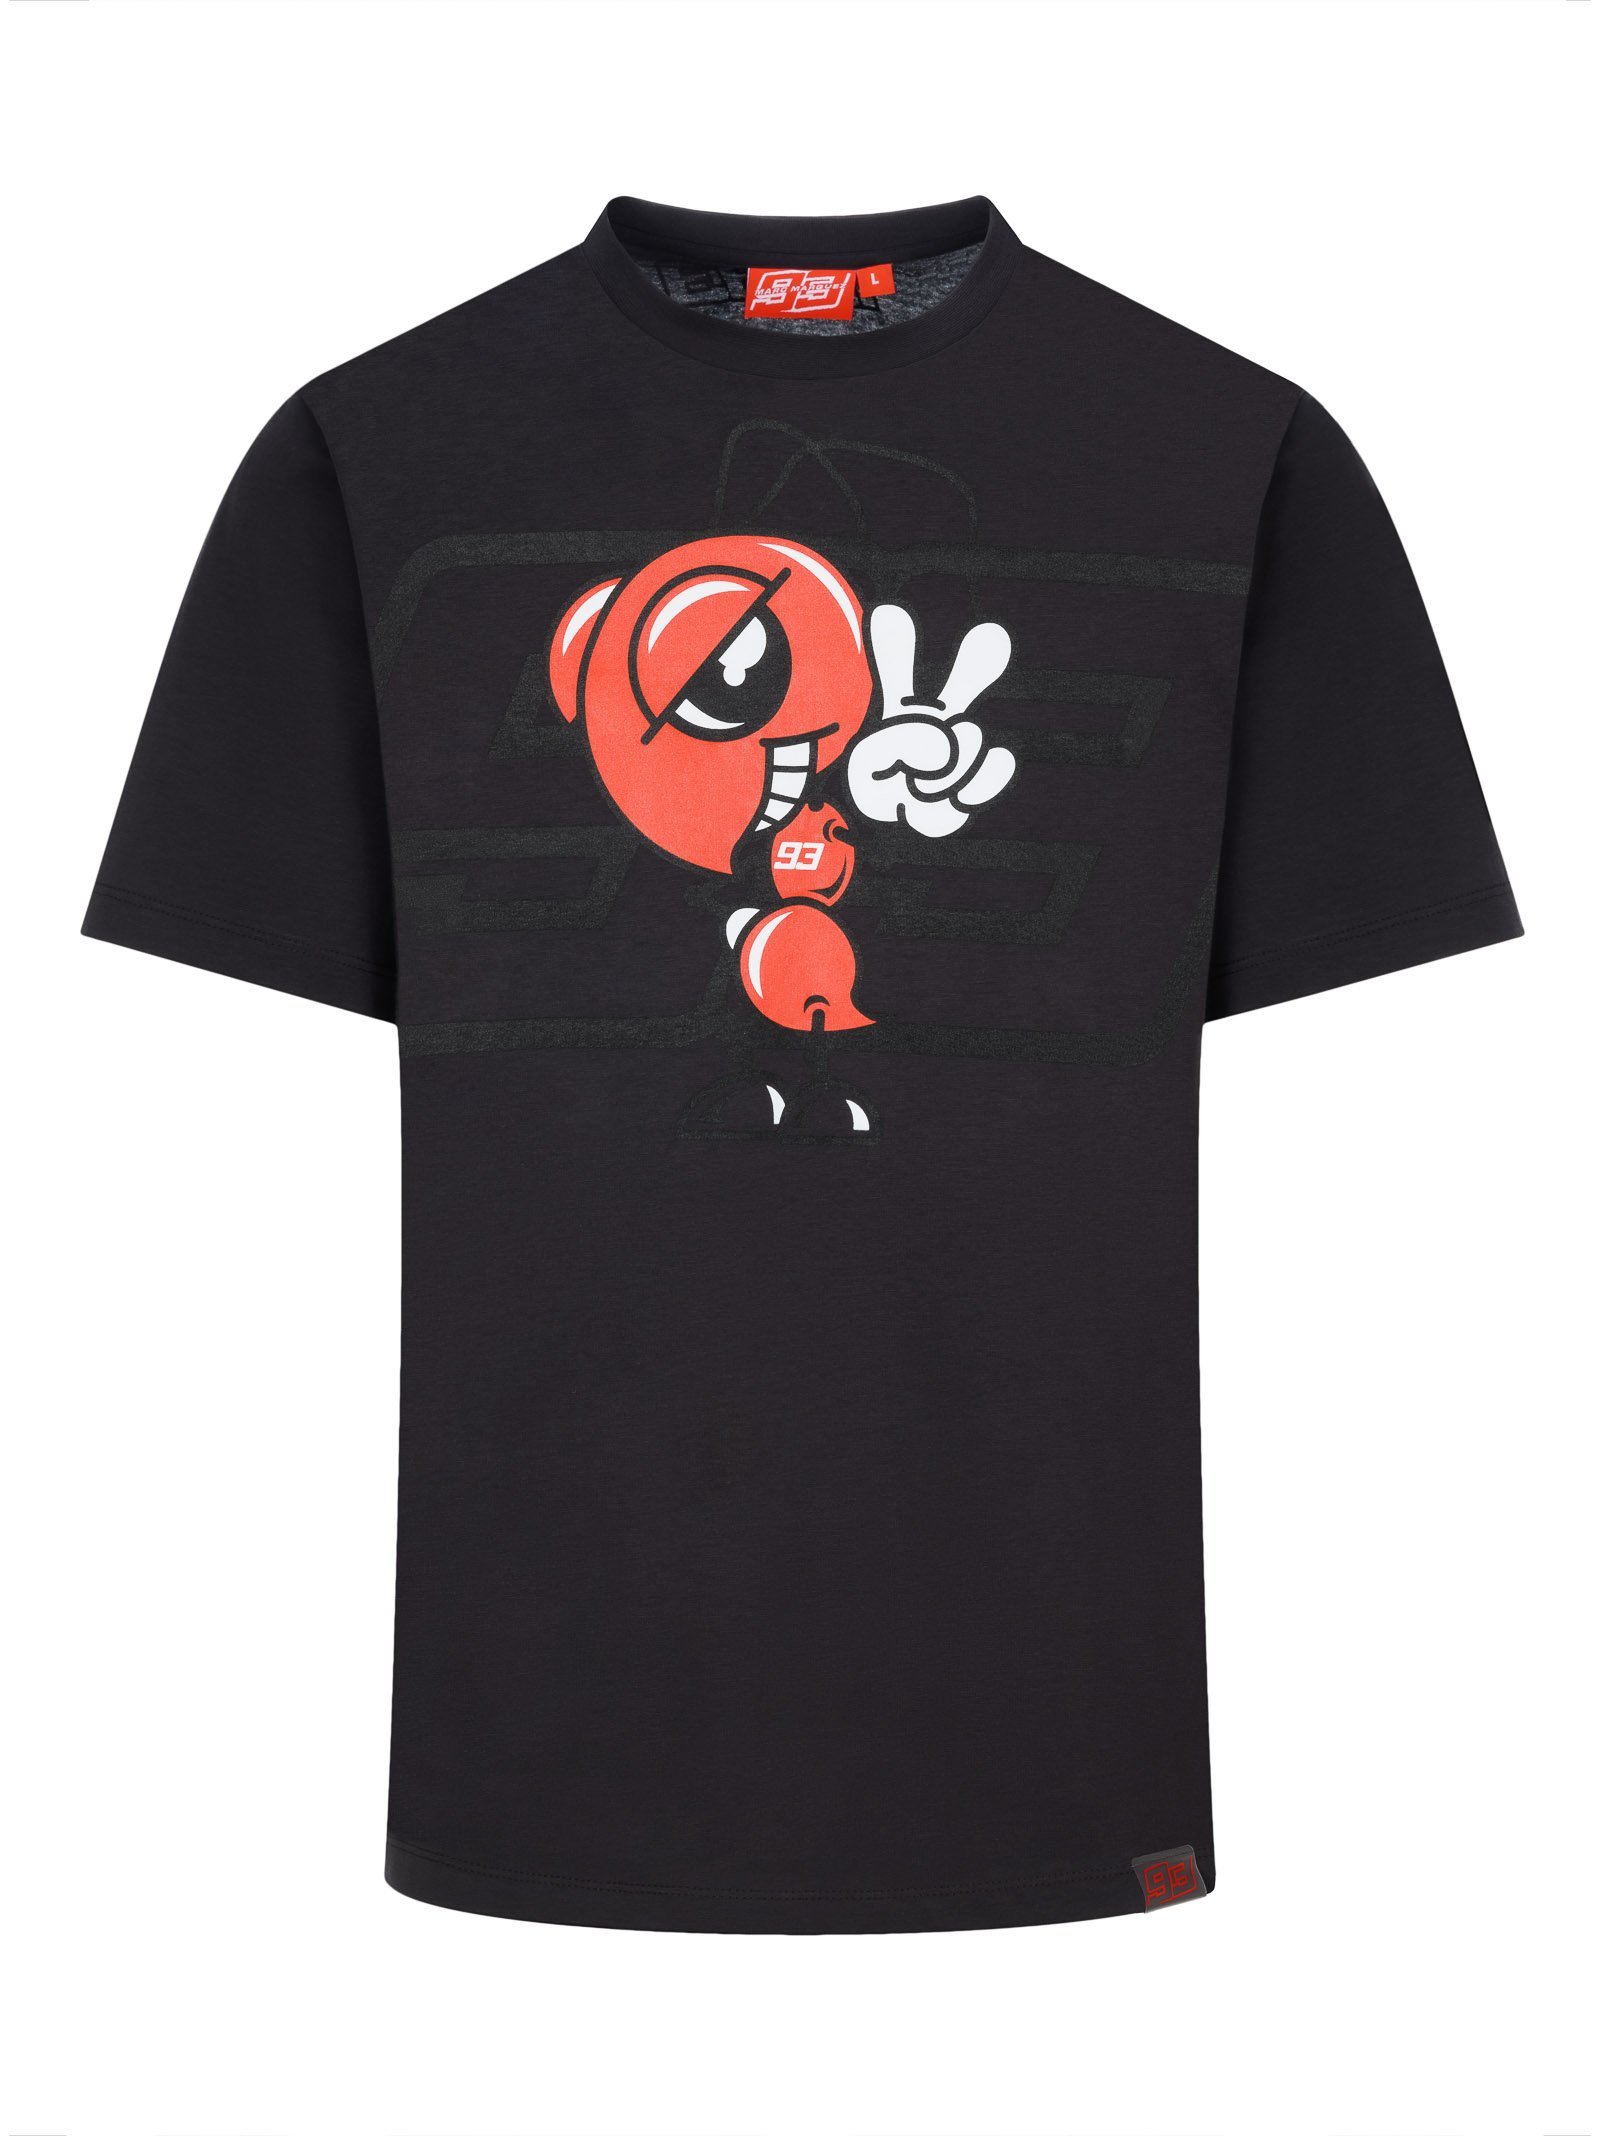 T-shirt homme MARC MARQUEZ 93 anthracite mascotte fourmi